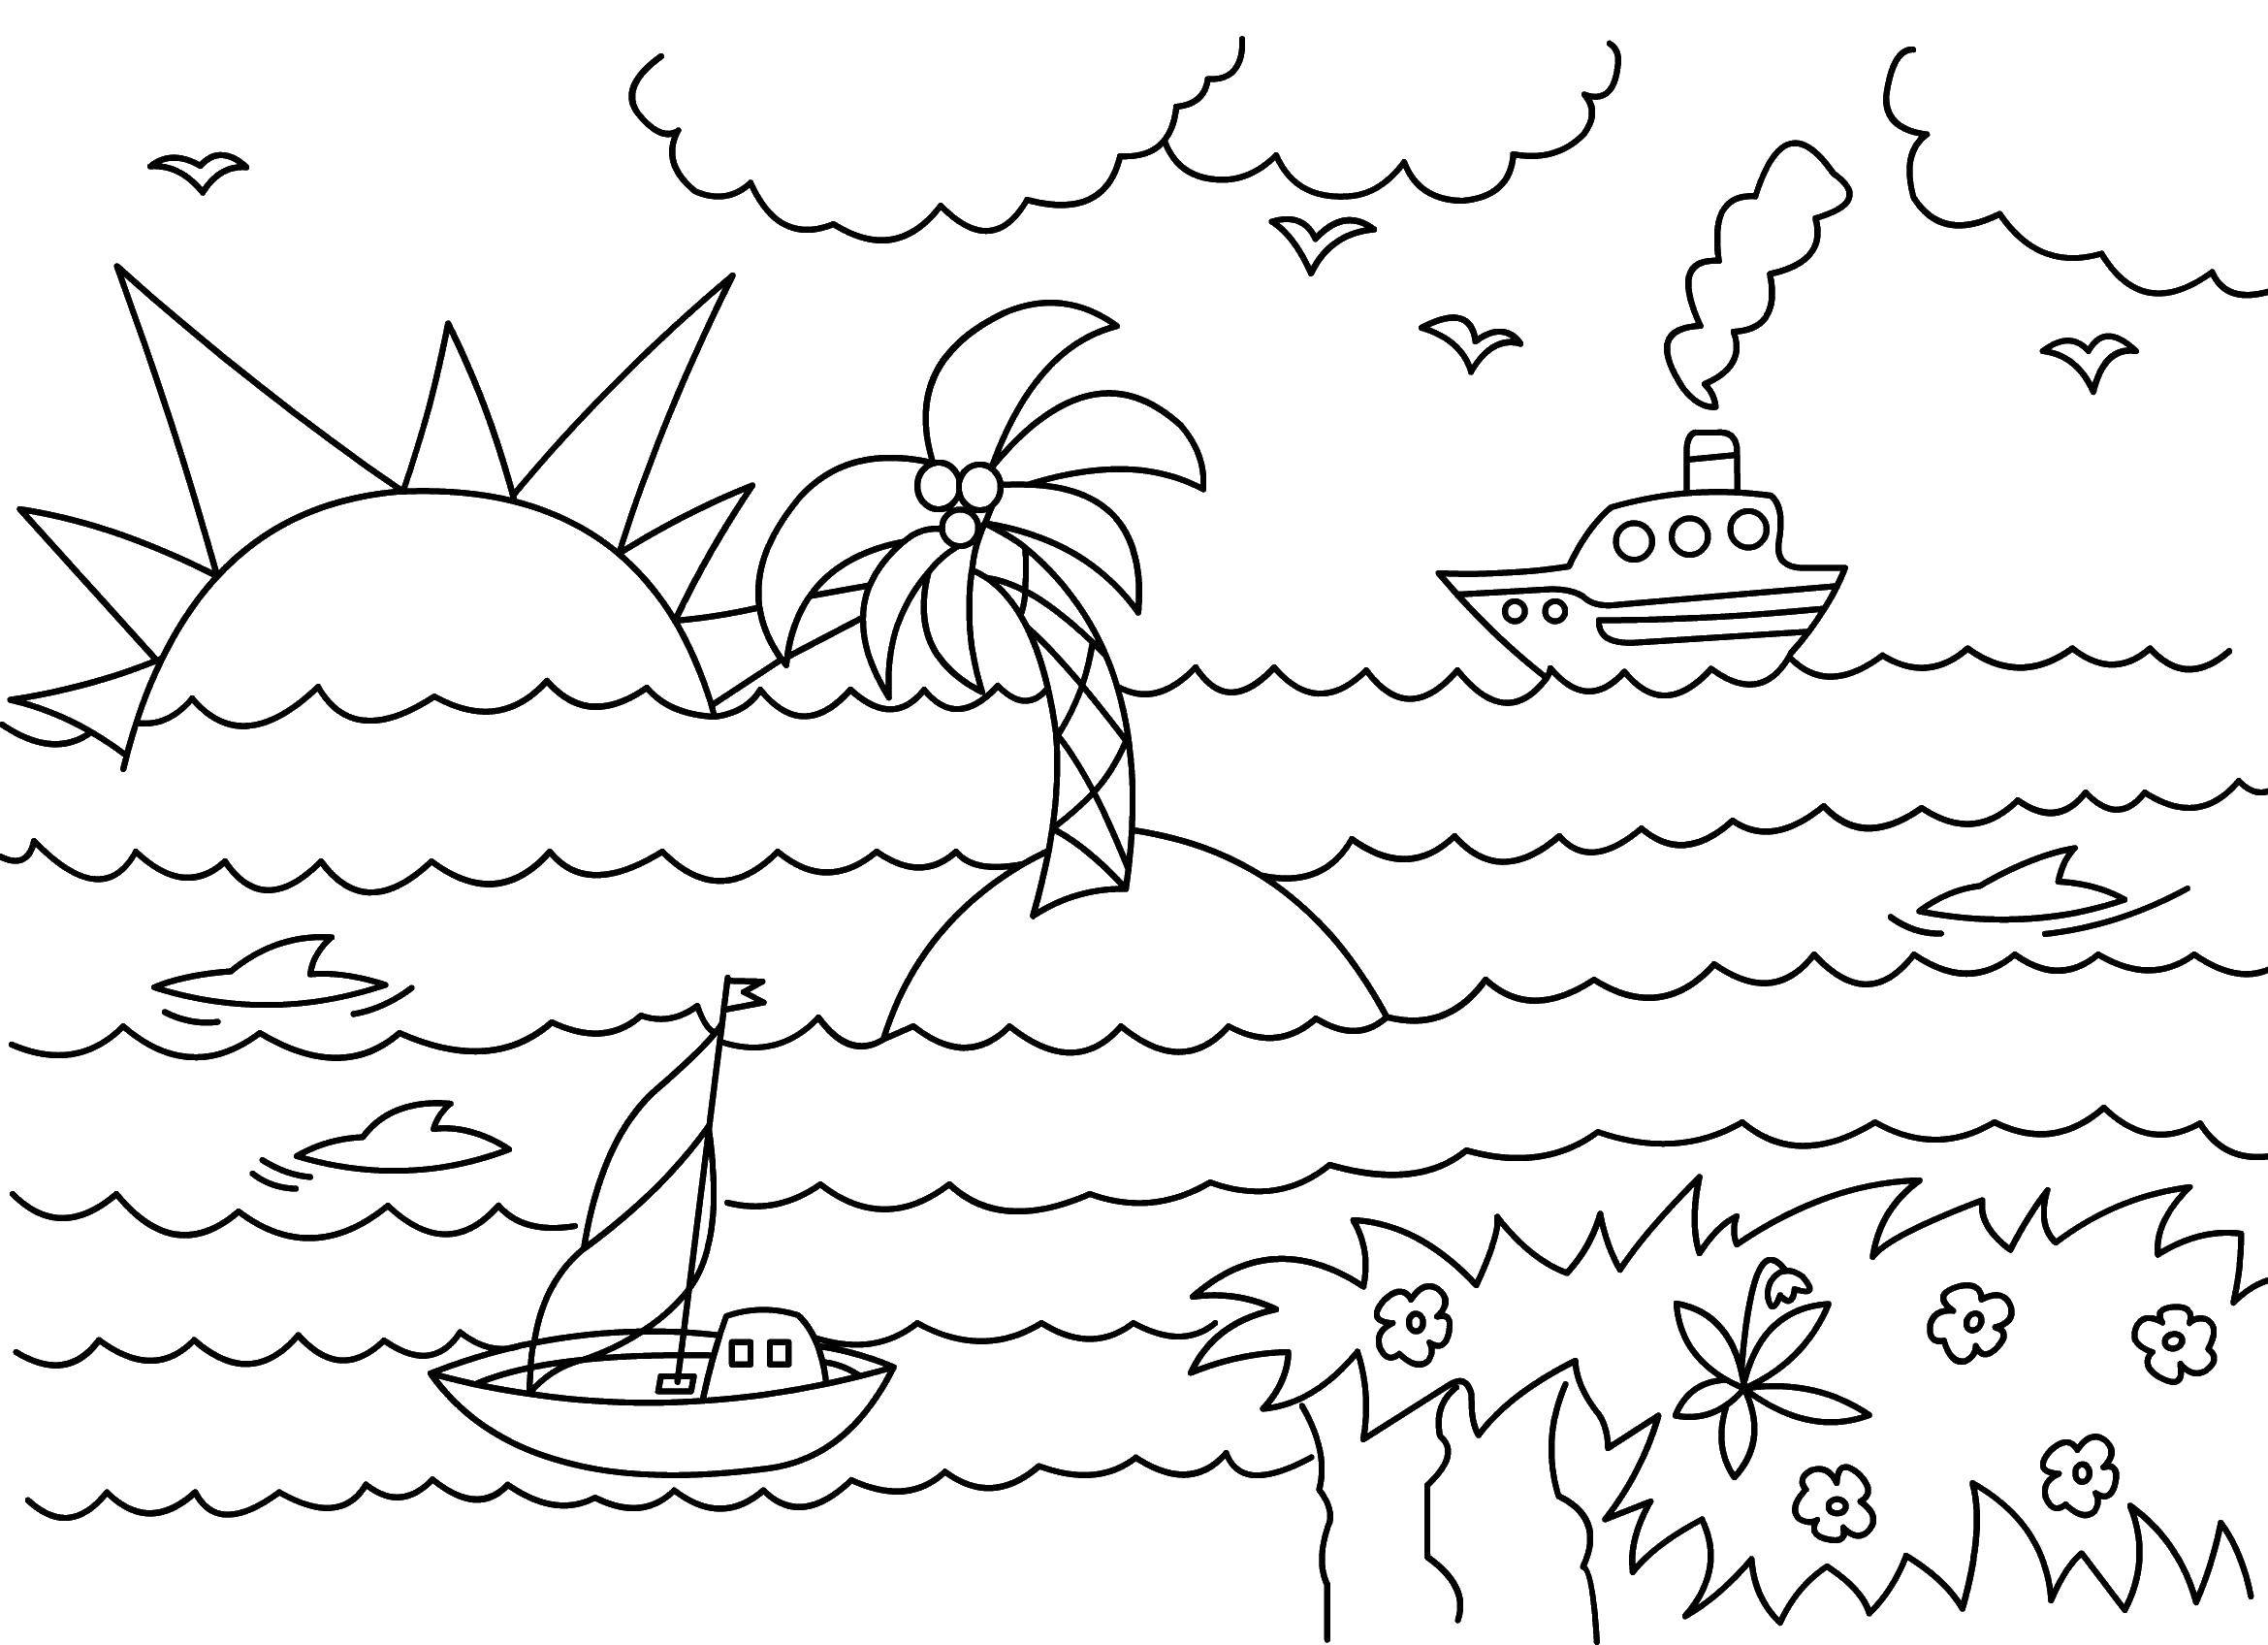  Корабли в море Кораблики плавают возле острова с пальмой.